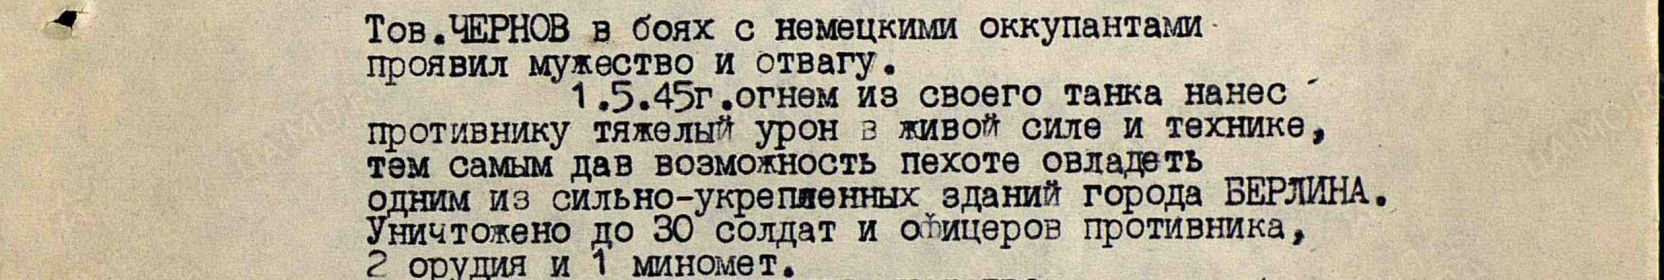 Приказ подразделения №: 41/н От: 18.06.1945  Издан: 12 гв. тк